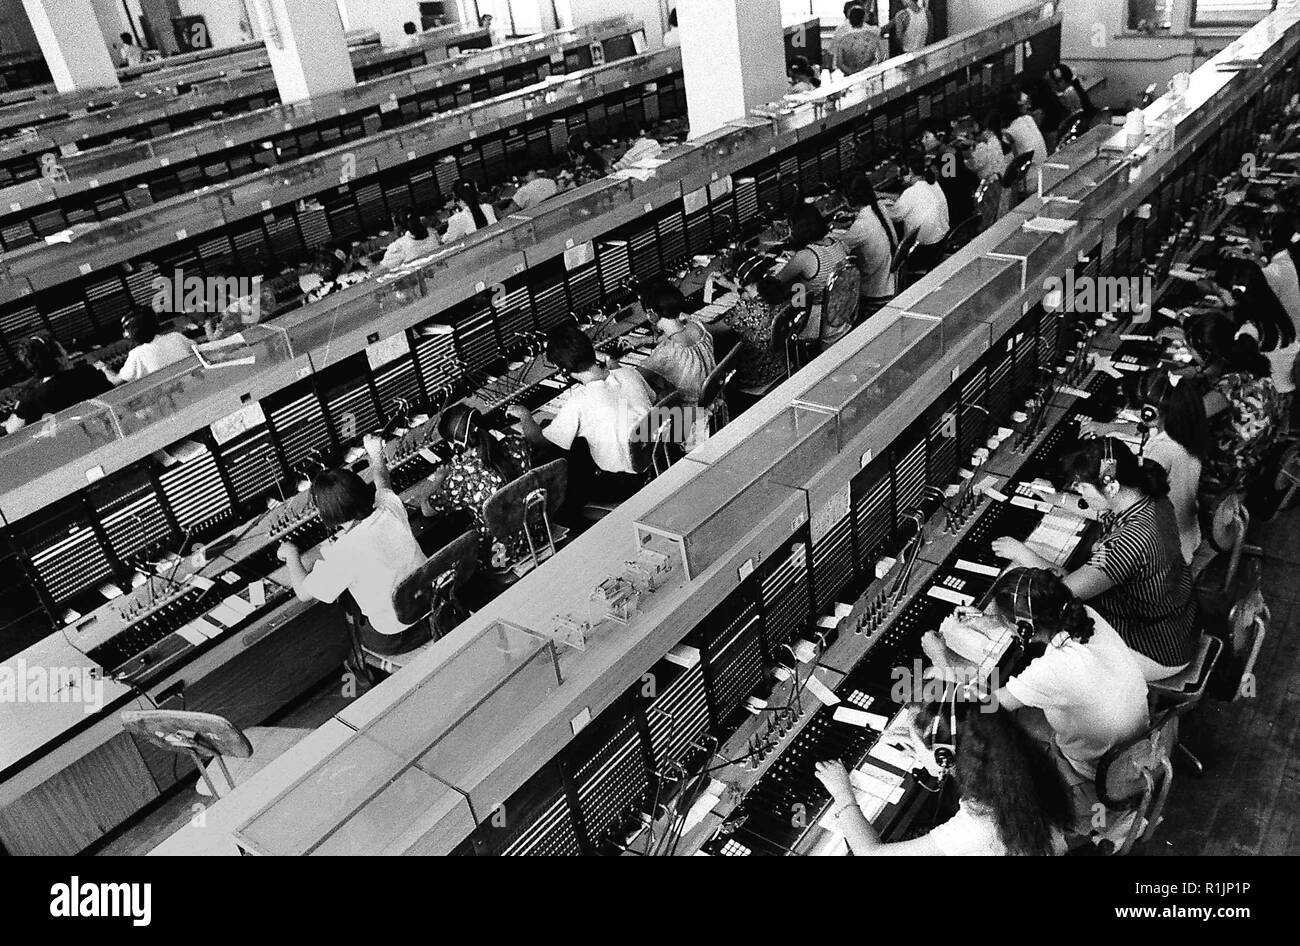 181113) -- PECHINO, nov. 13, 2018 (Xinhua) -- gli operatori telefonici  lavoro a Zhengzhou telecom bureau in Zhengzhou, centrale cinese della  Provincia di Henan, nel maggio del 1986. Più di quattro decenni